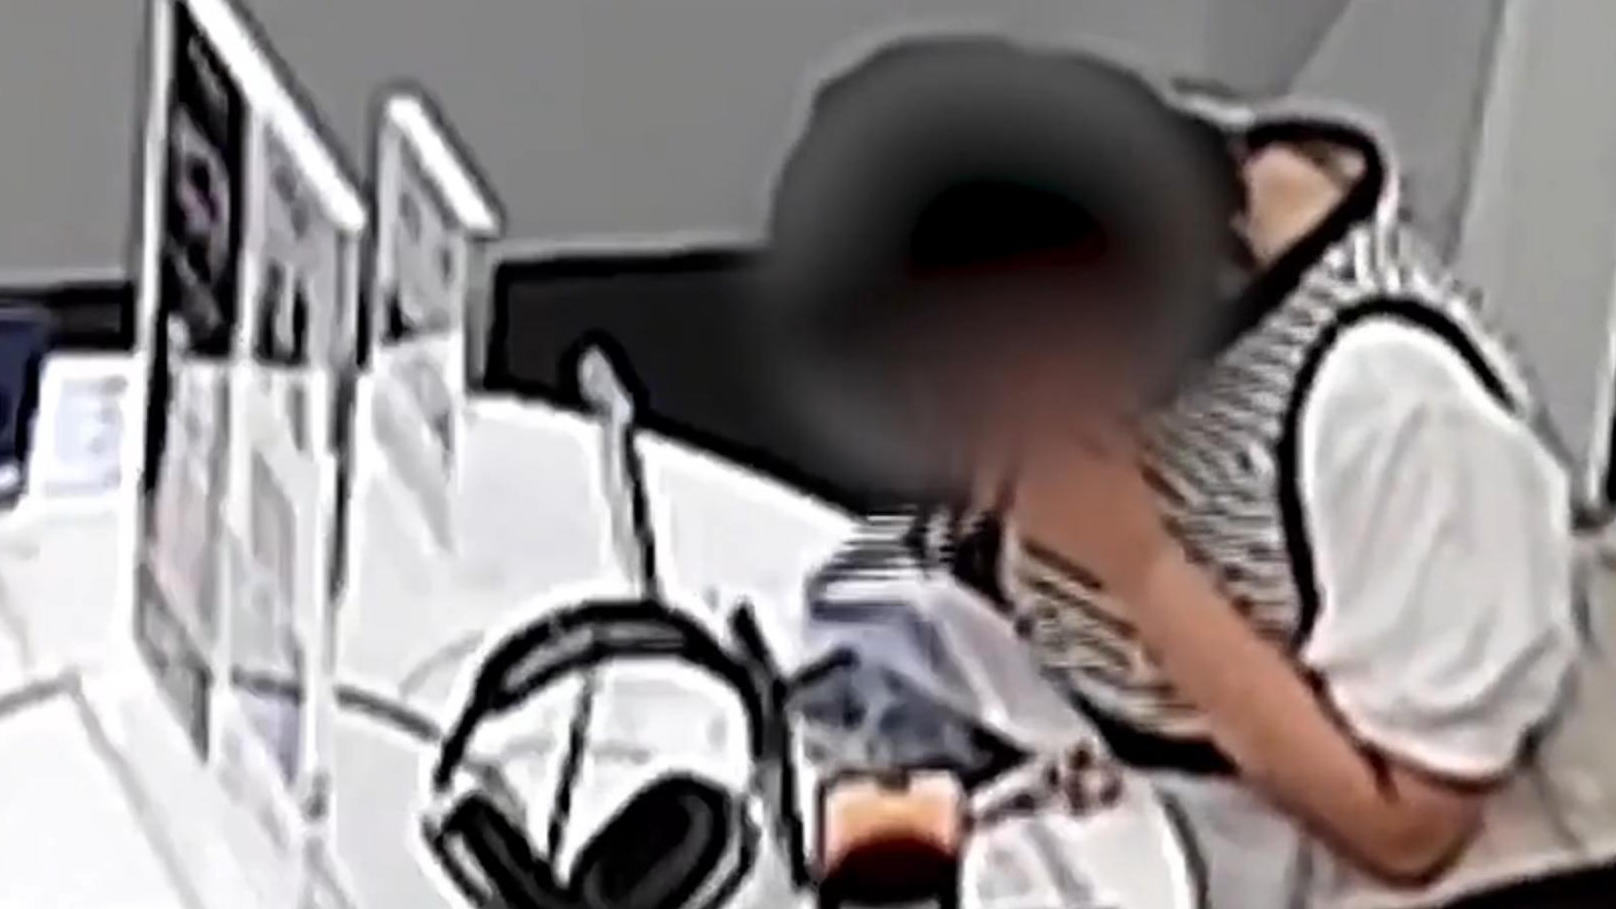 Frau beißt Sicherheitskabel durch - und klaut IPhone! Die Kameras hat sie wohl vergessen